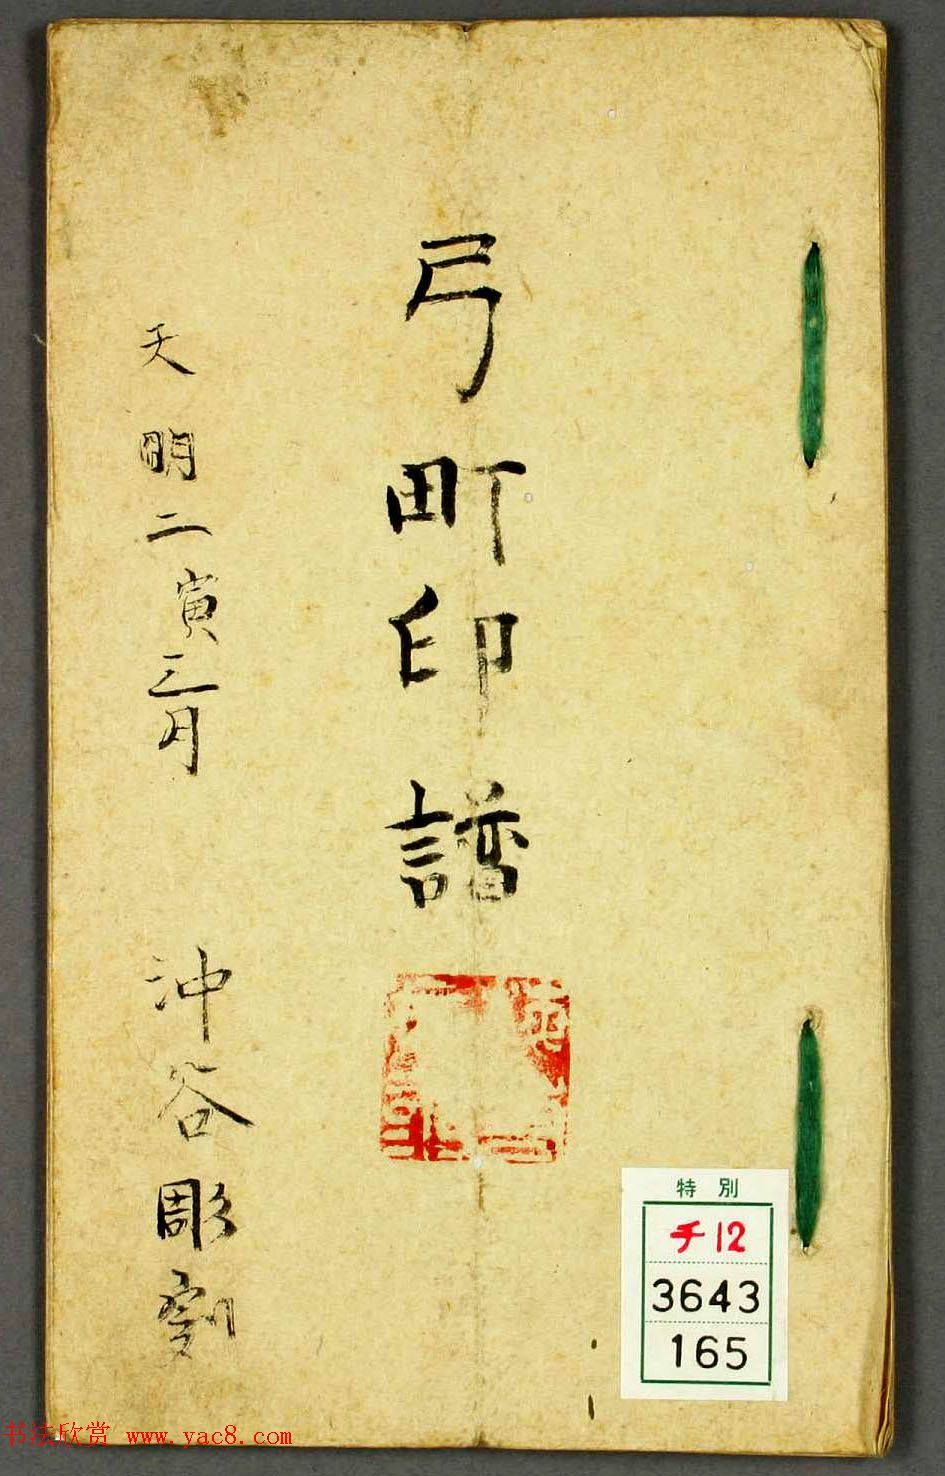 日本篆刻作品册页《弓町印谱》